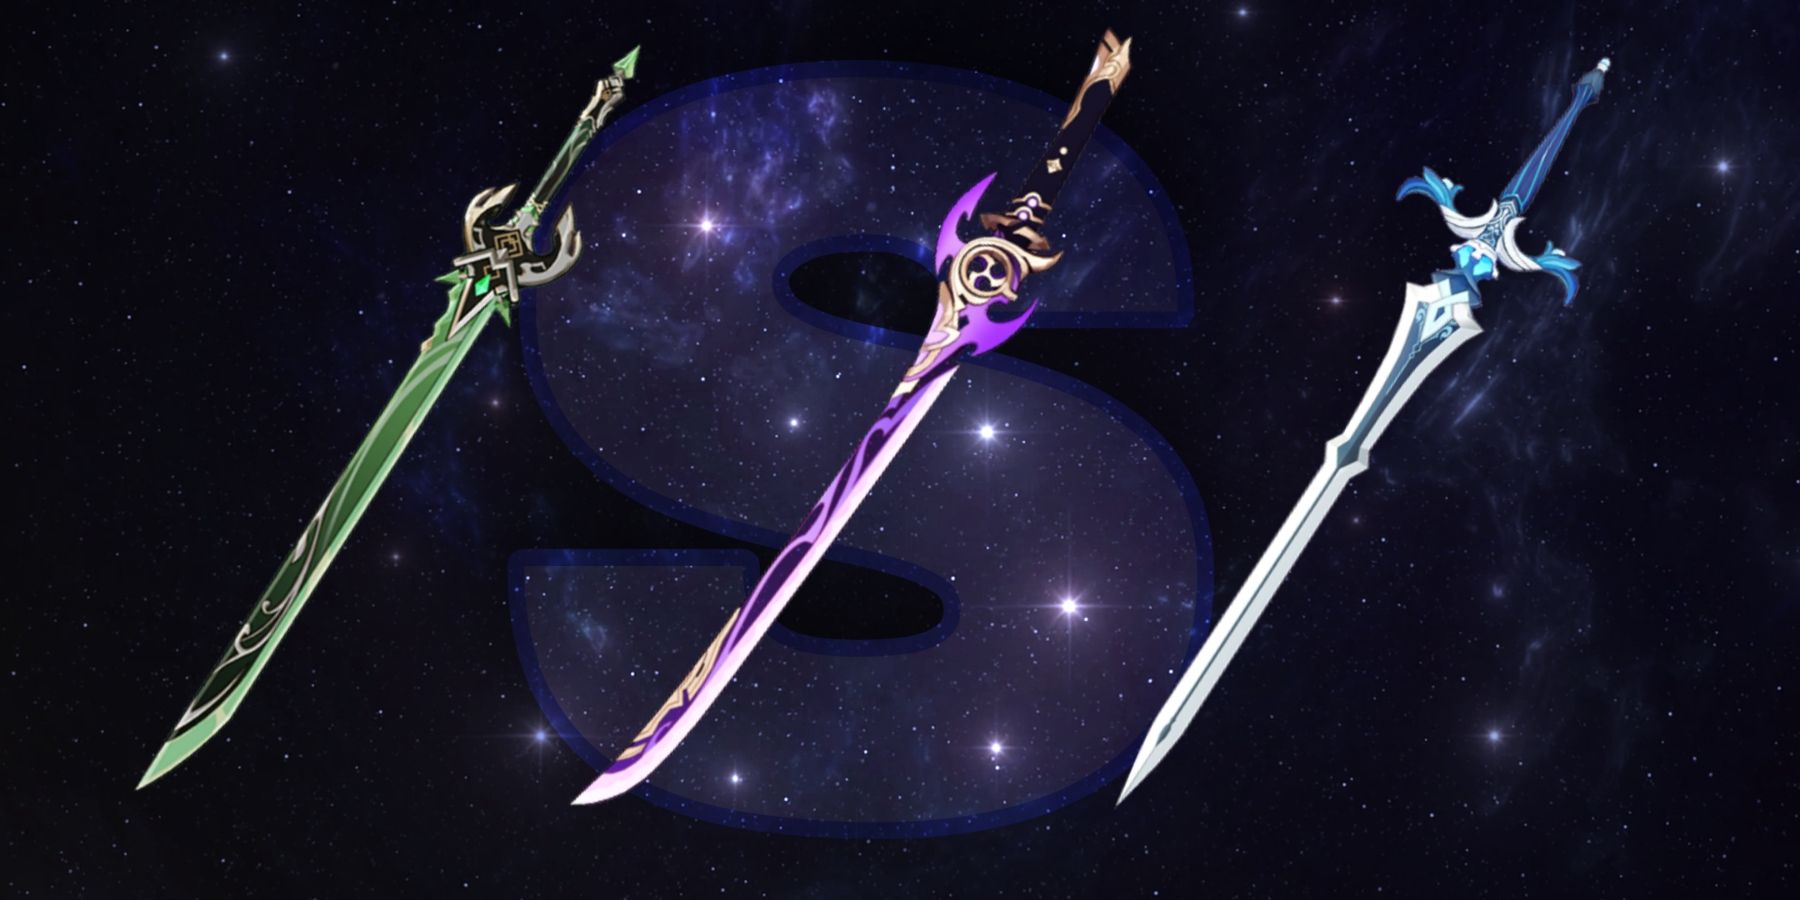 s tier swords in genshin impact